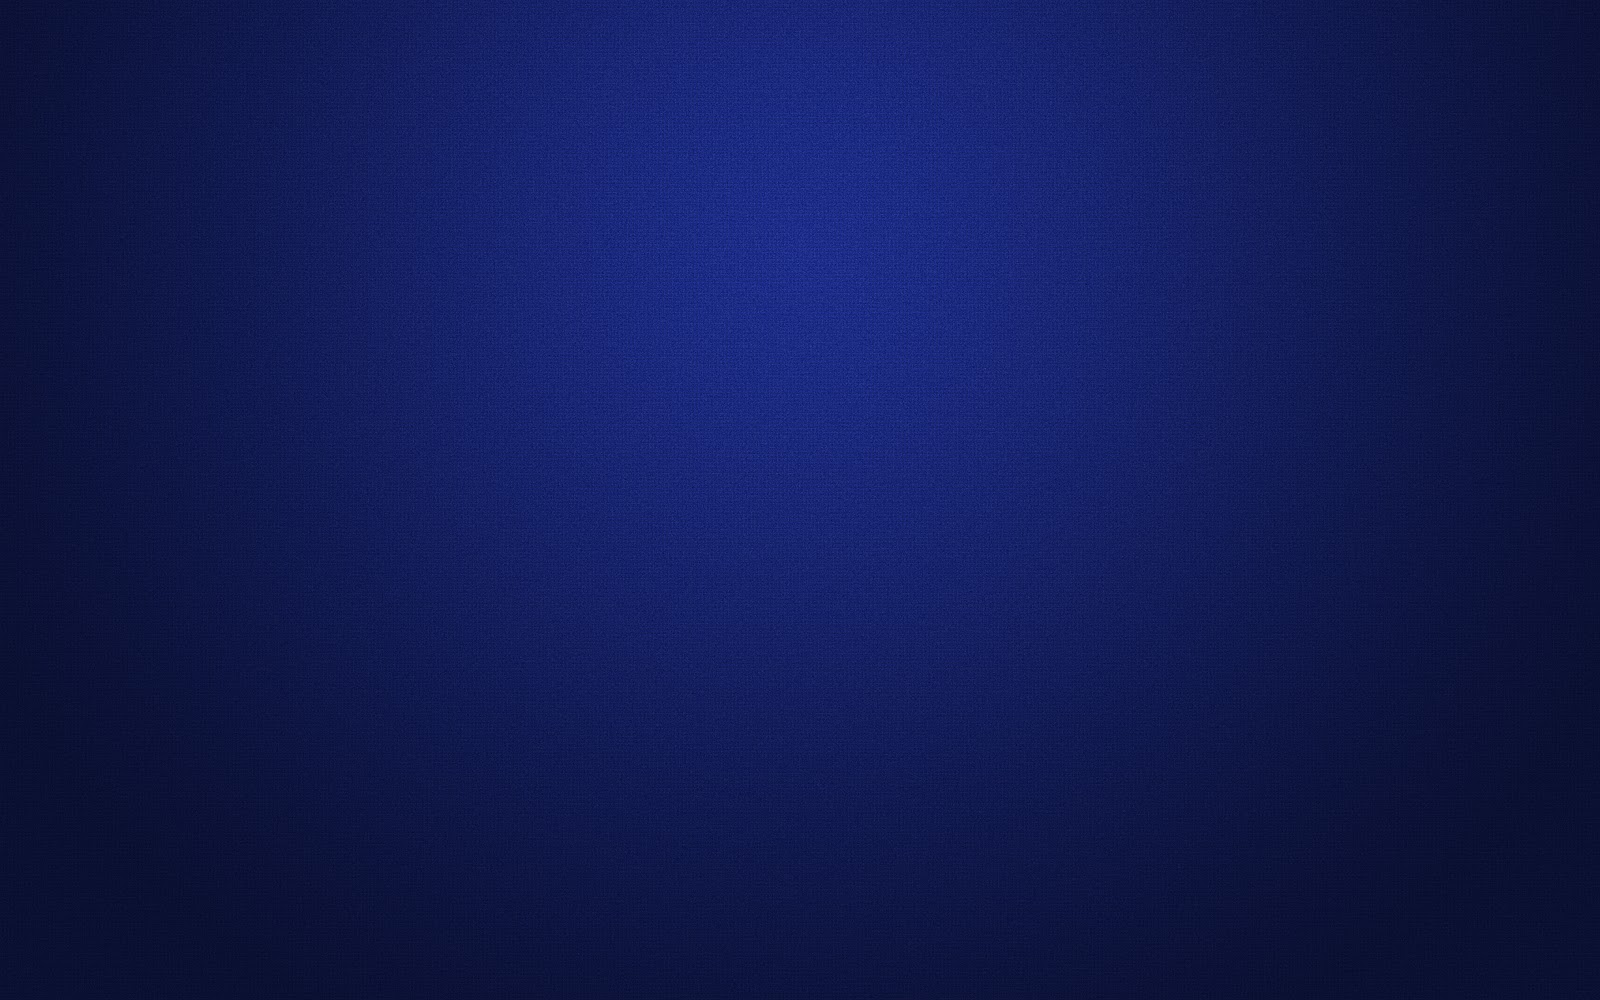 50+] Dark Blue Wallpapers HD - WallpaperSafari